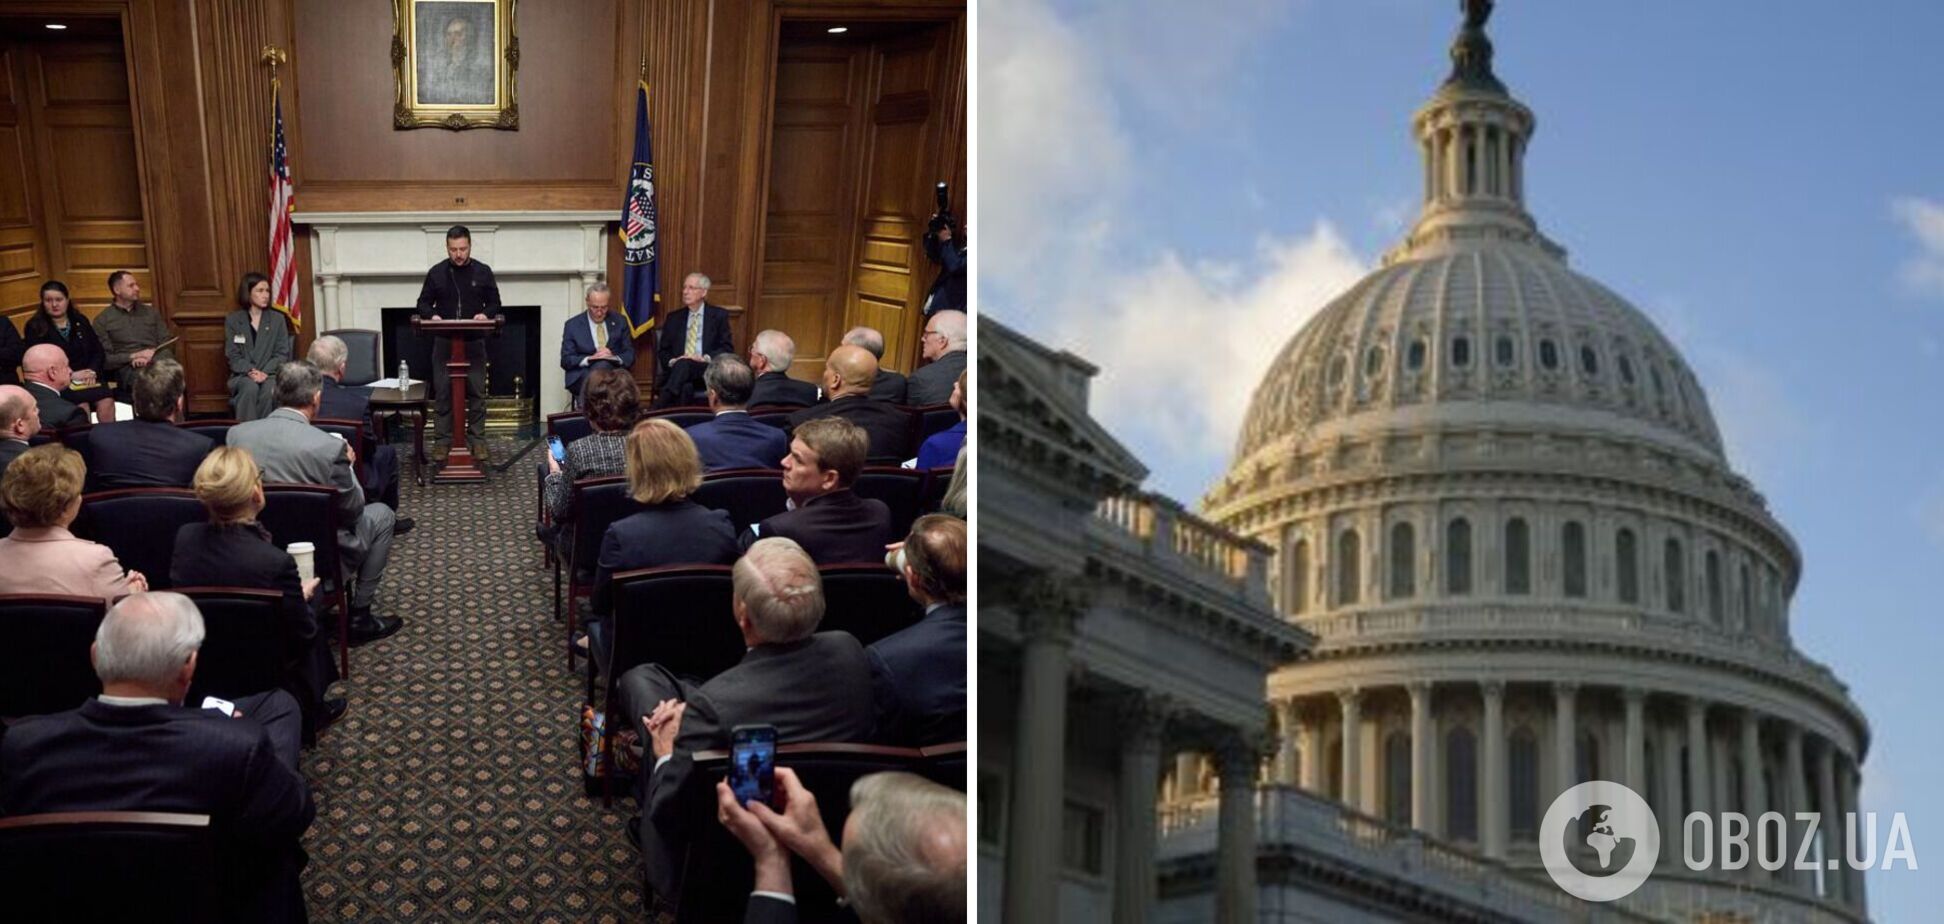 'Если Украина получит помощь, то сможет выиграть эту войну': первые подробности встречи Зеленского с сенаторами США